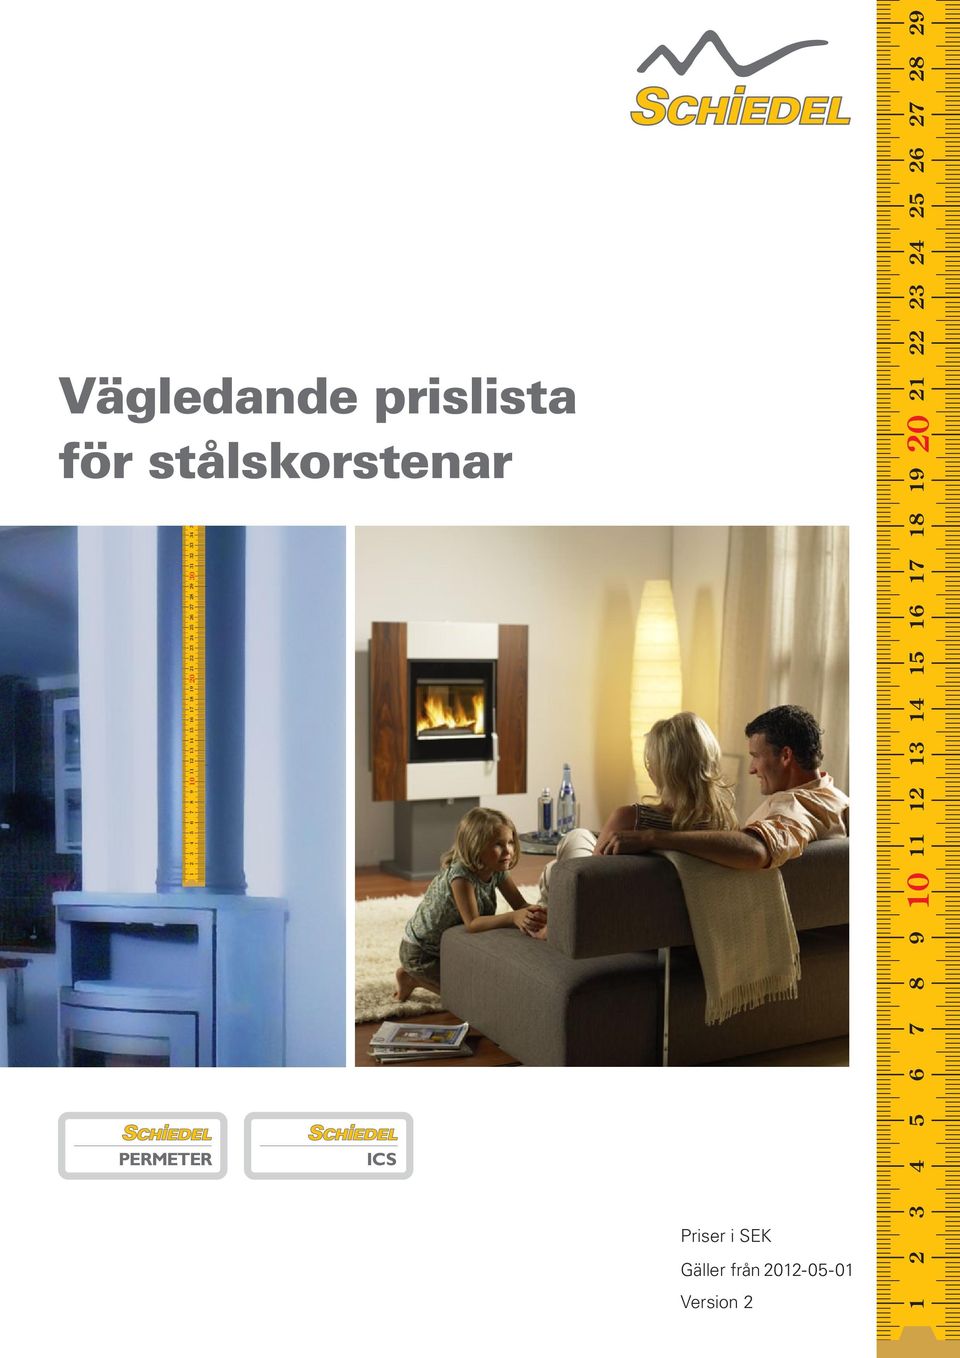 35 36 37 38 39 40 ICS Priser i SEK Gäller från 2012-05-01 Version 2 1